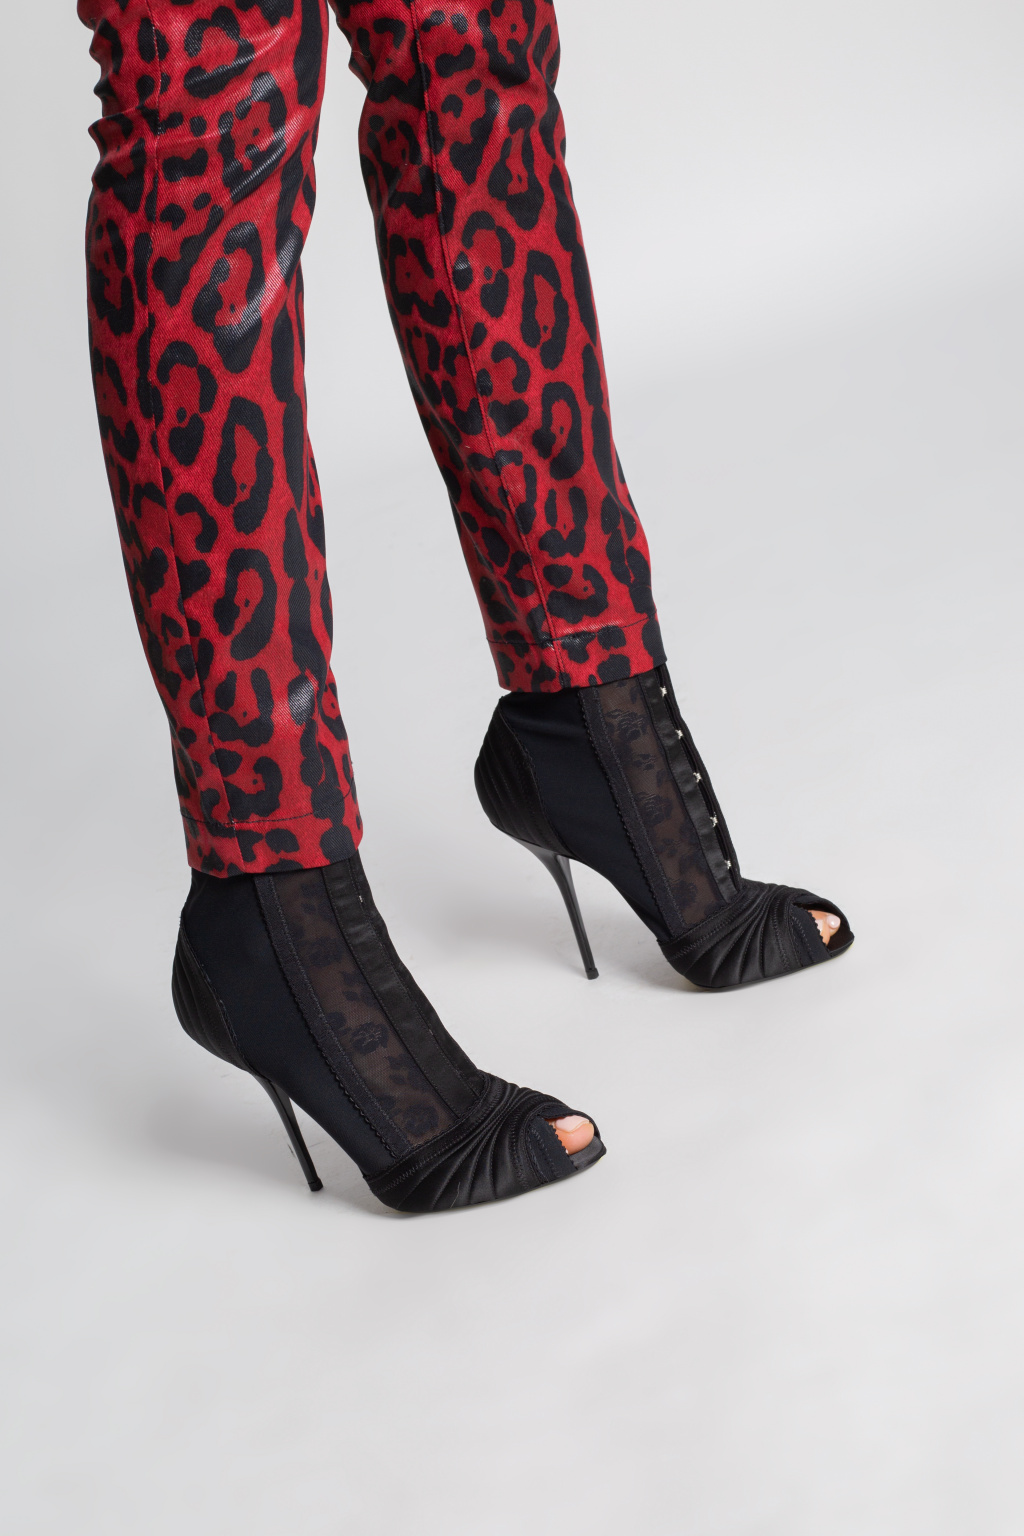 Dolce & Gabbana Heeled boots